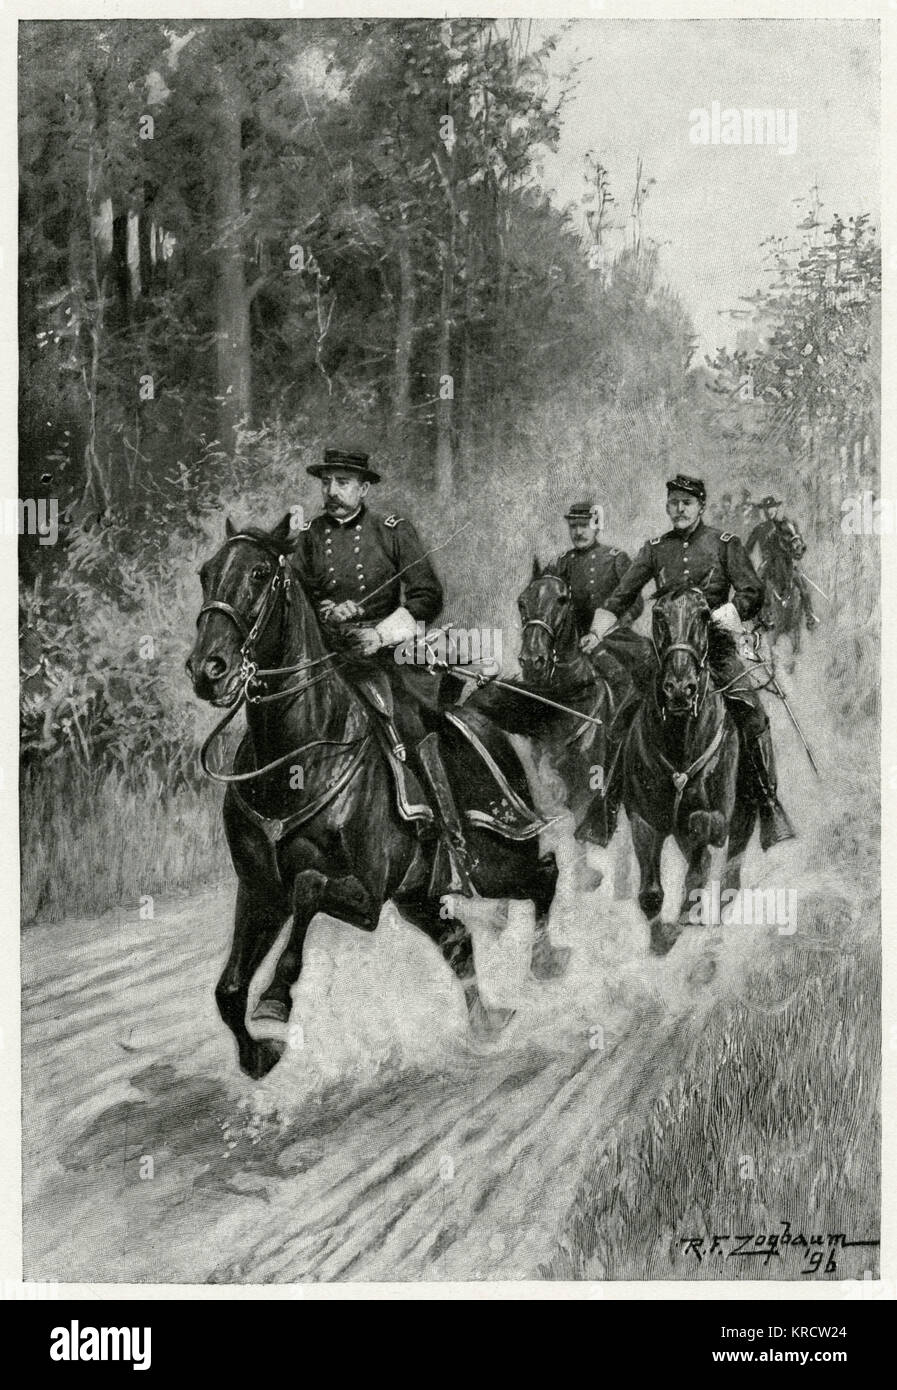 Philip Henry Sheridan, US-General, da das Kommando über die Armee des Shenandoah, besiegt er General Lee. Hier hat er Fortschritte in einem angemessenen Tempo zu Pferd mit seinen Männern. Datum: 1864 Stockfoto